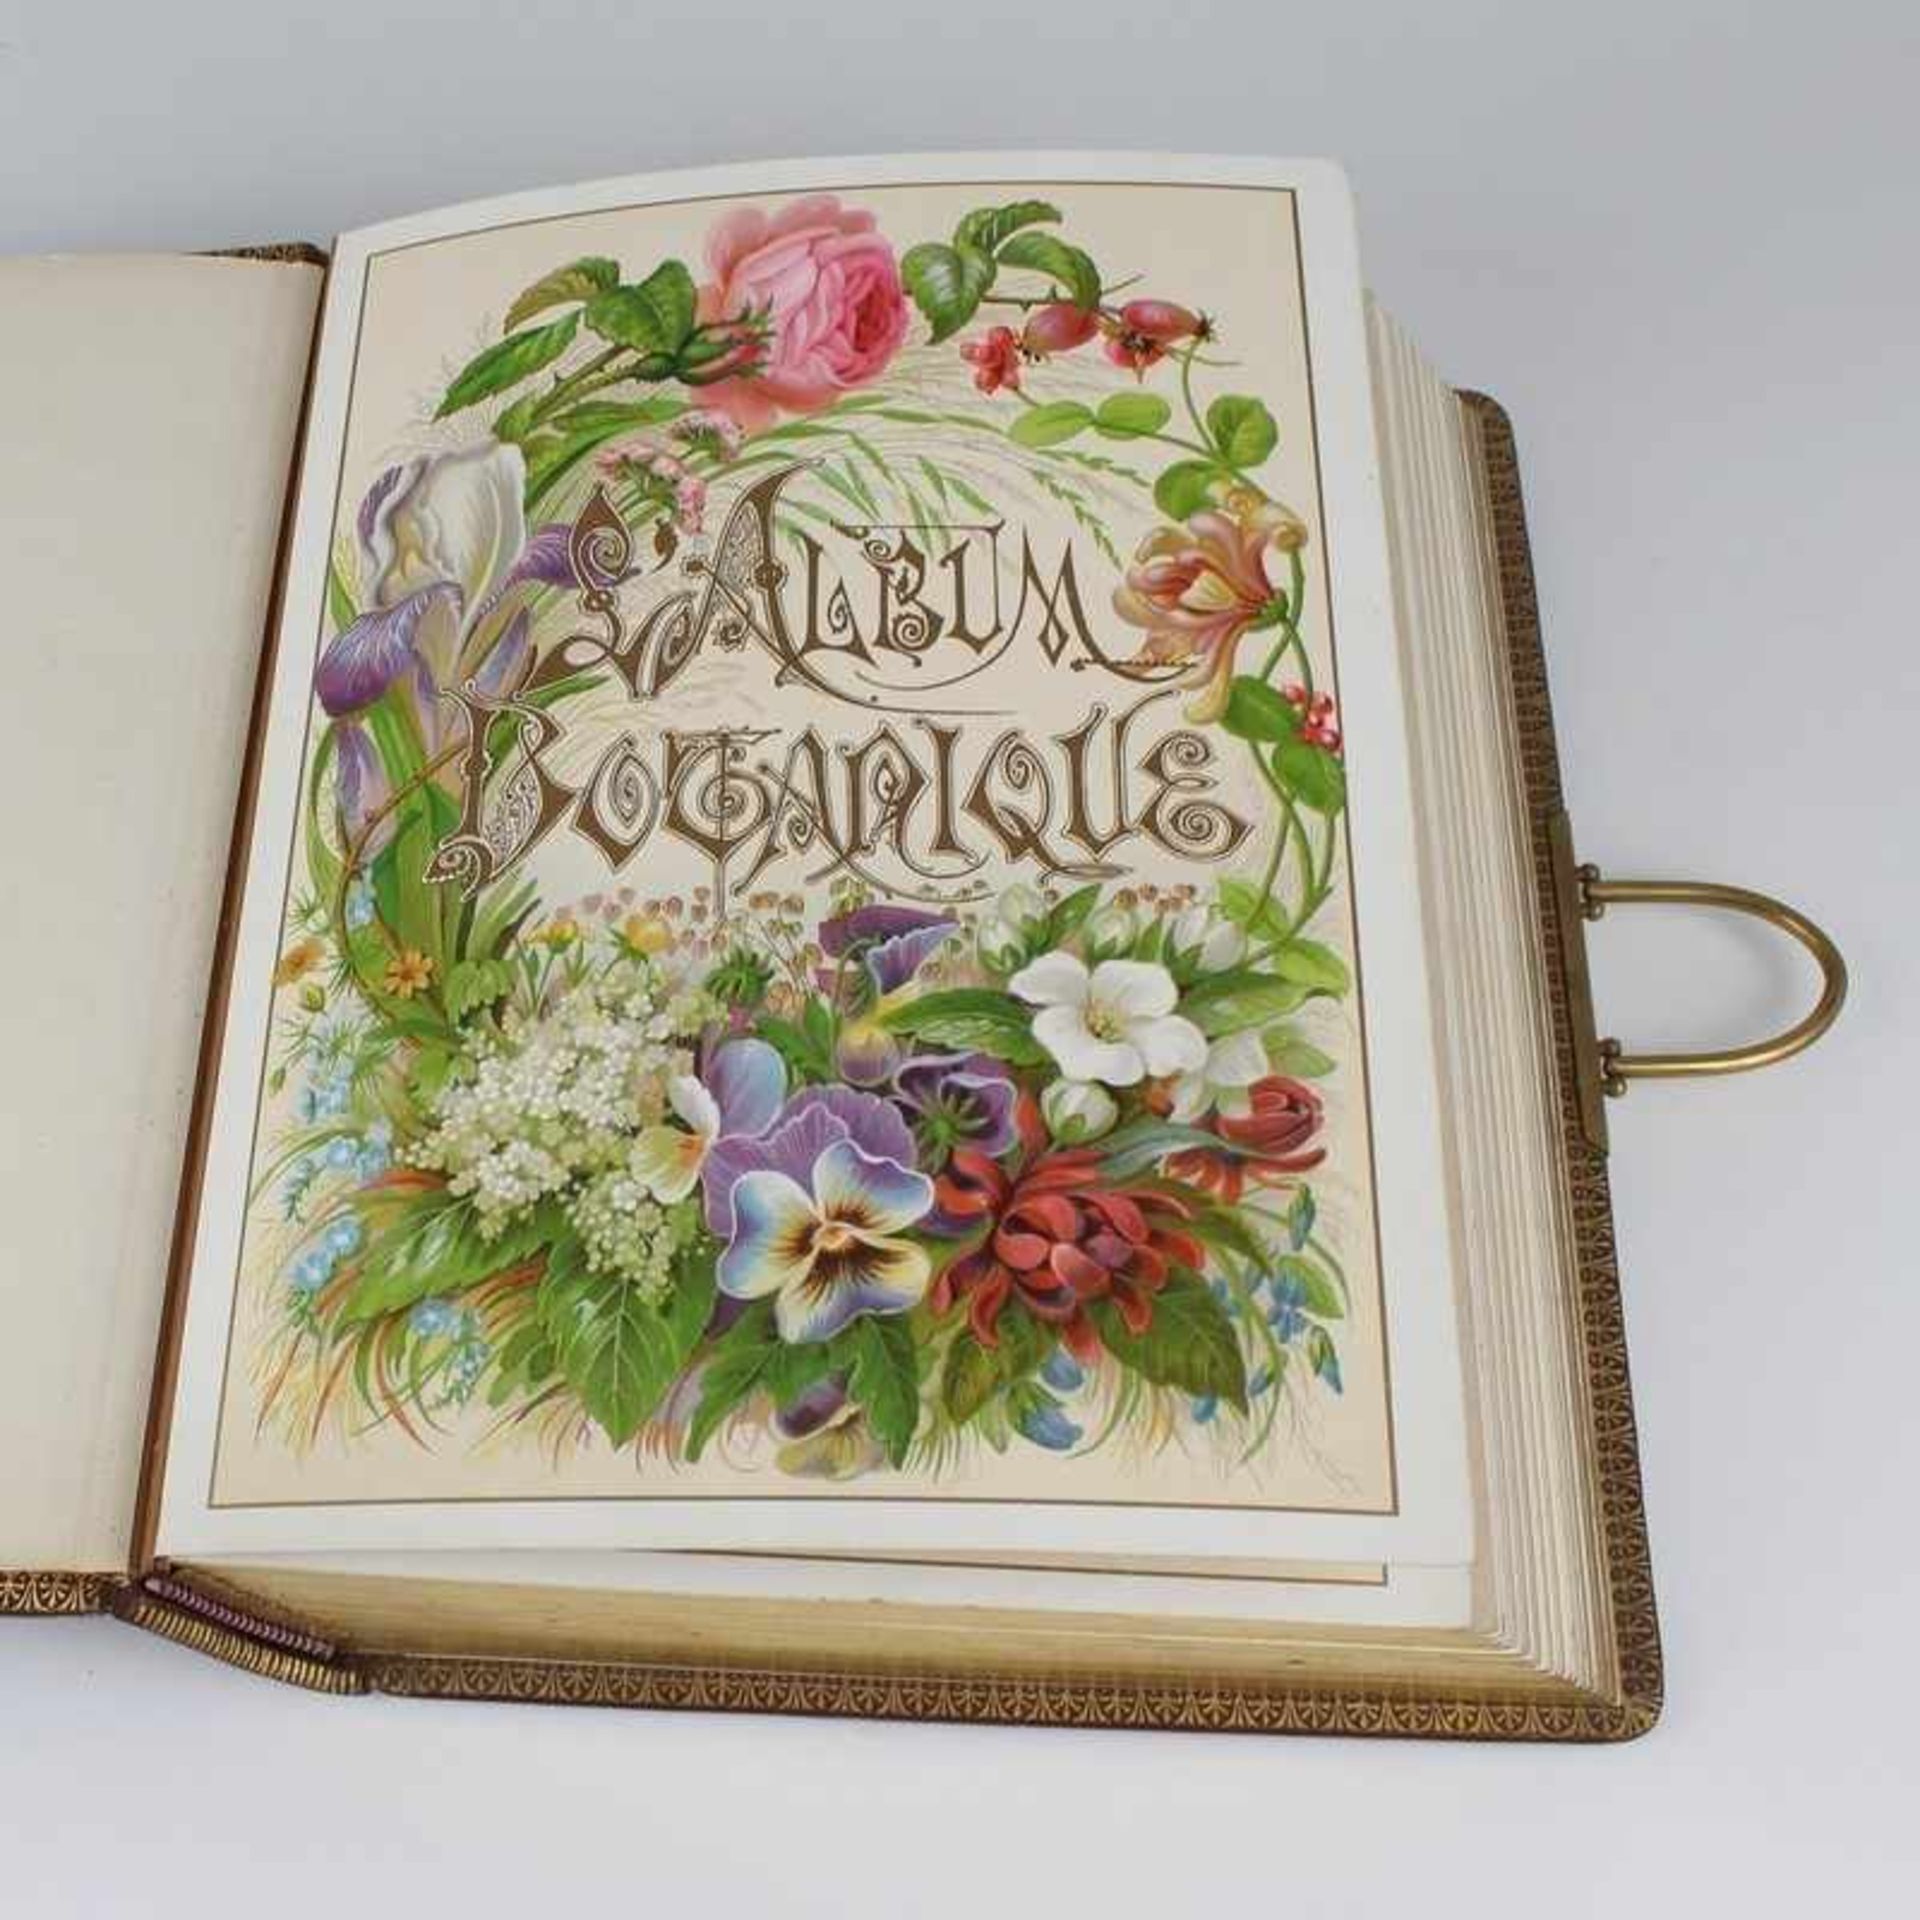 Fotoalbum um 1900, Album Botanique, ohne Fotos, geprägter, vergoldeter Ledereinband, Goldschnitt,